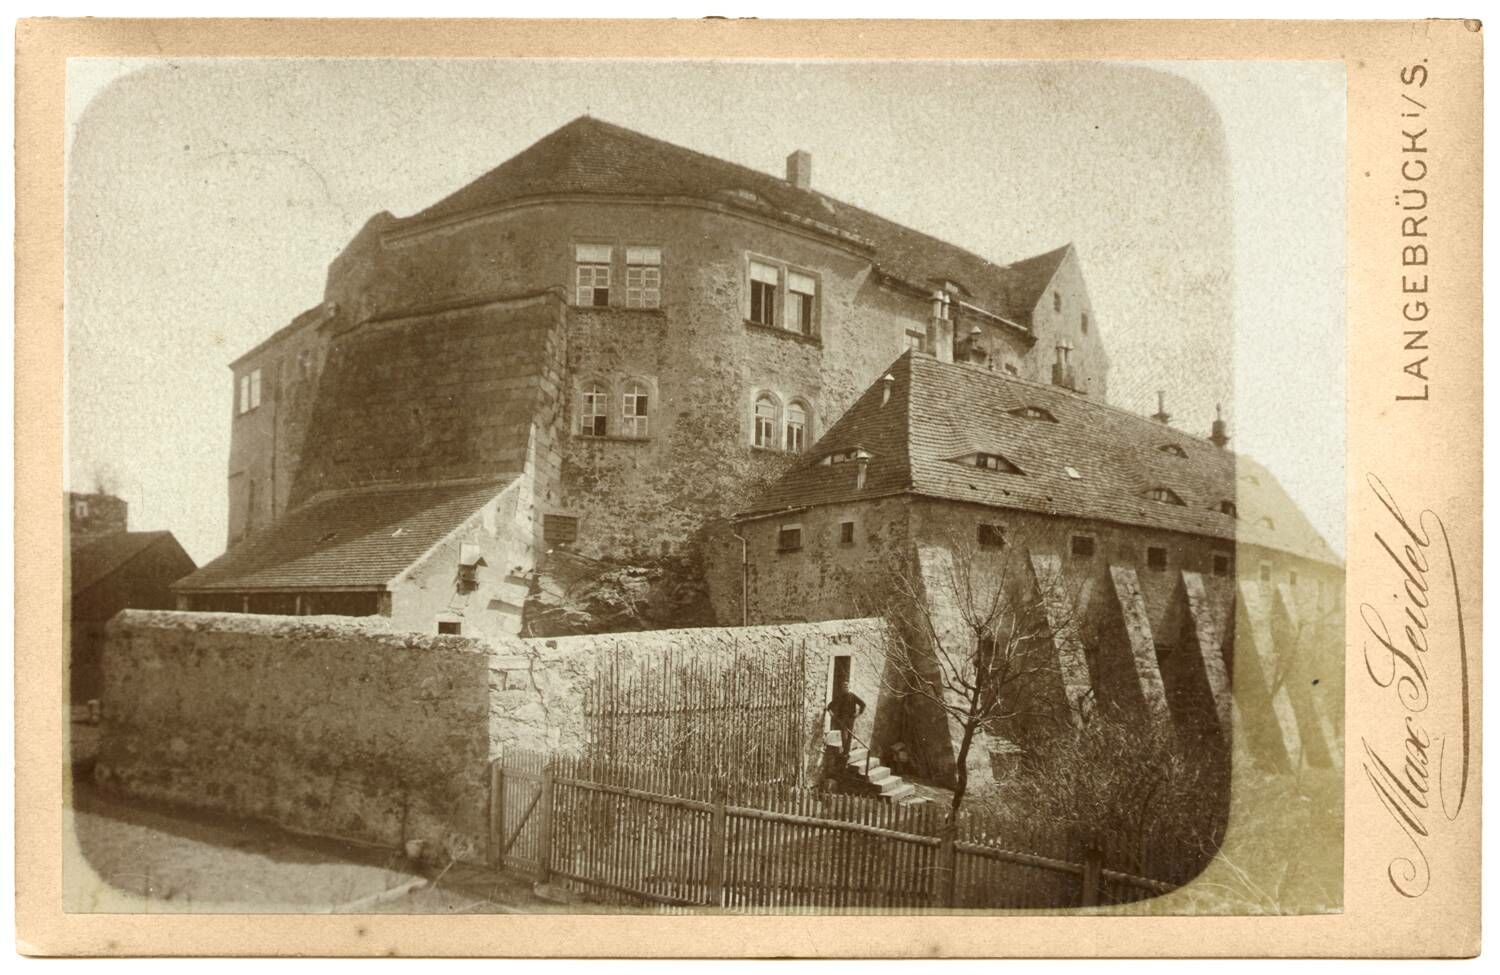 Schwarz-weiß-Foto um 1900 mit Hauptburg. Im Vordergrund die Mauern des Gefängnishofes und die Vorburg mit Stützmauern. Am rechten Bildrand Aufdruck nach oben "Max Seidel".